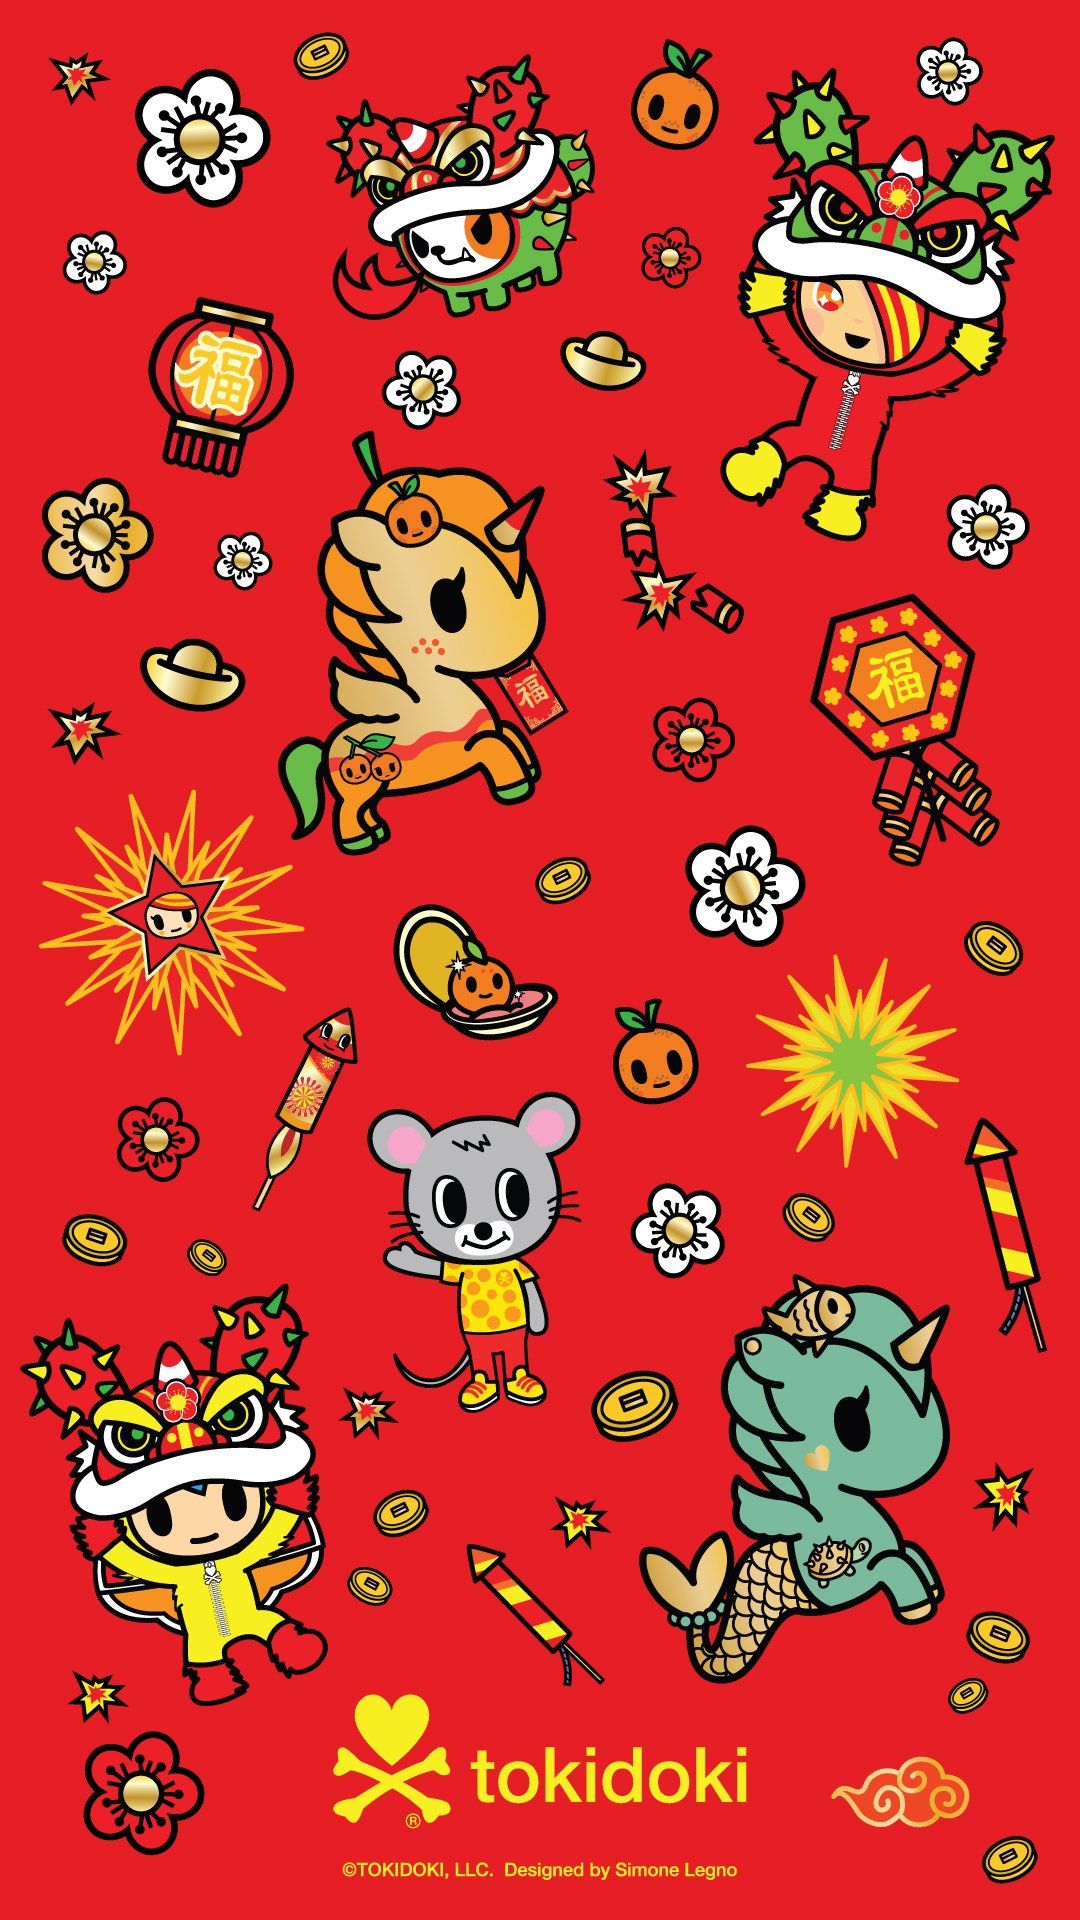 Lunar New Year Wallpaper